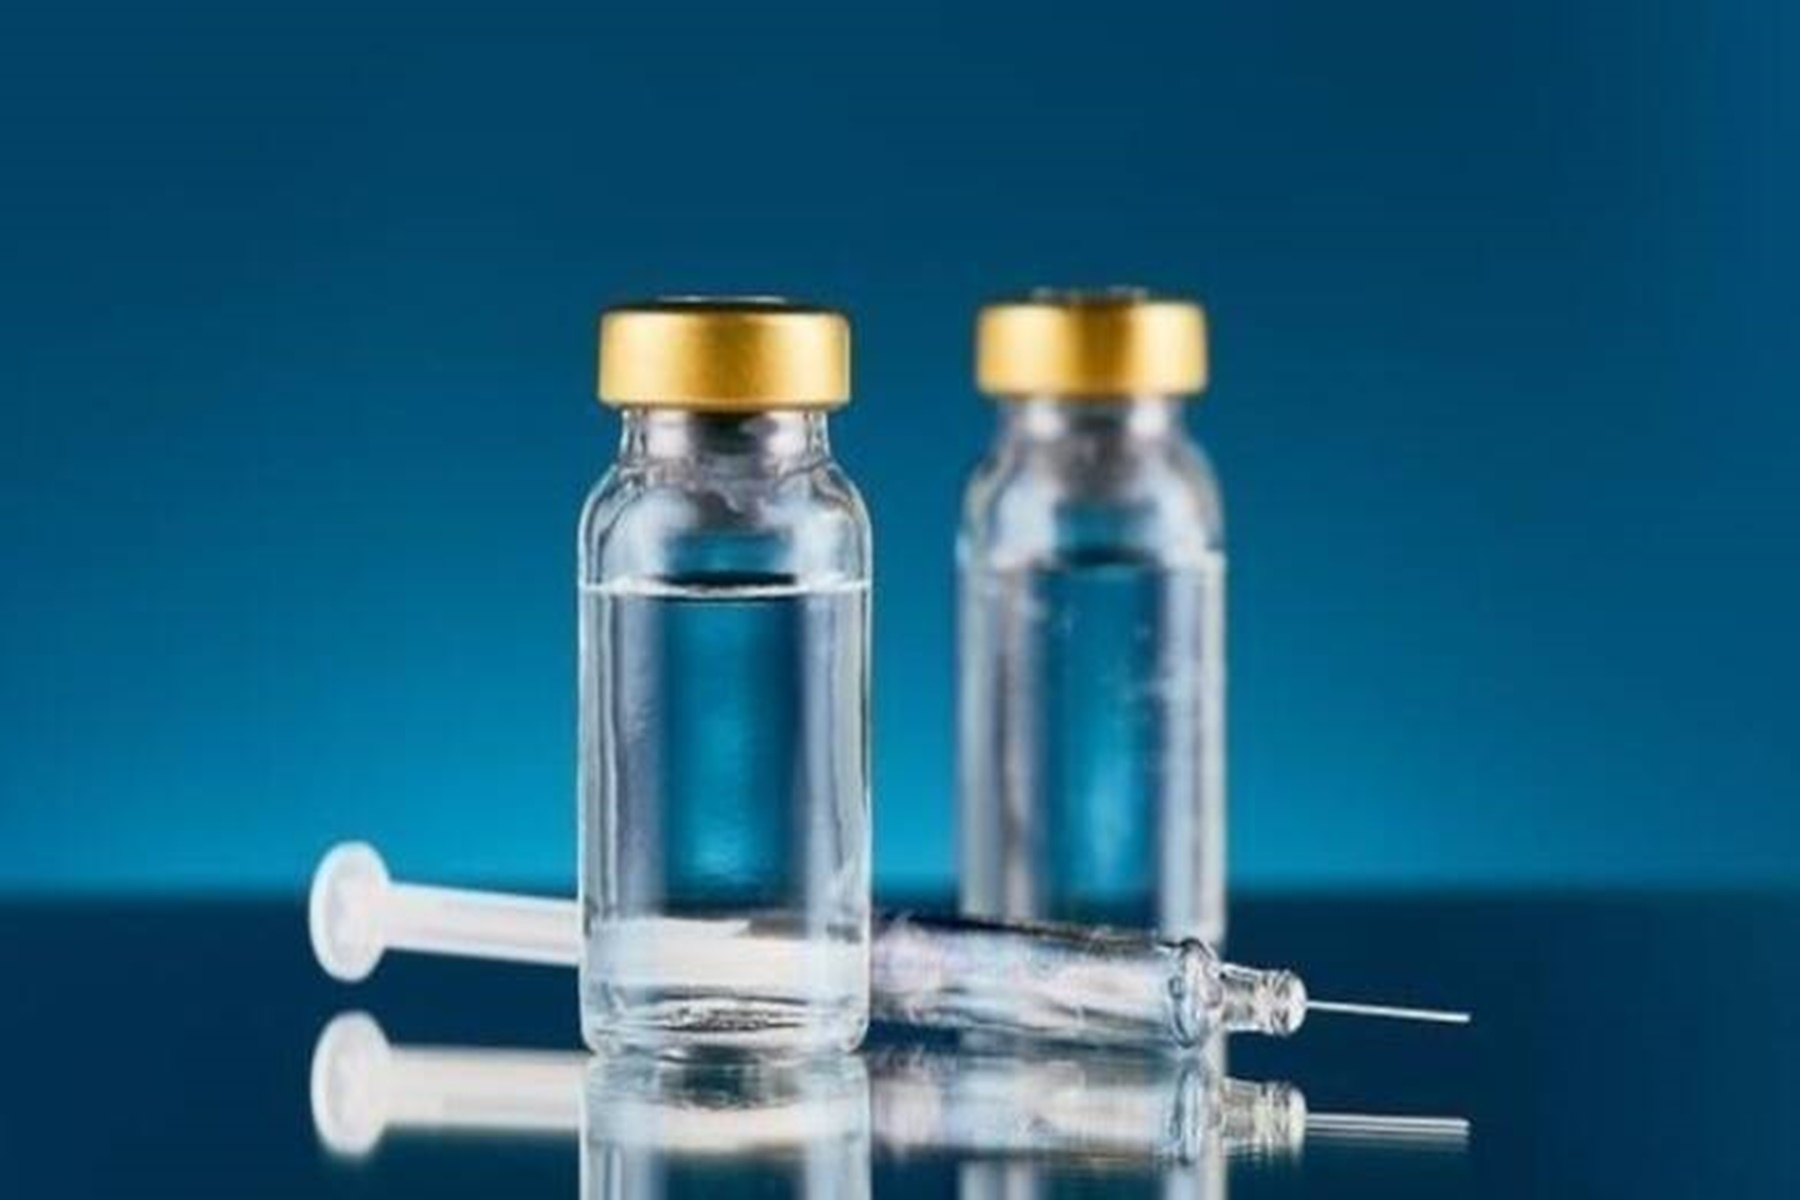 Εμβόλια COVID-19: Είναι αποτελεσματικά ενάντια στο δέλτα στέλεχος;